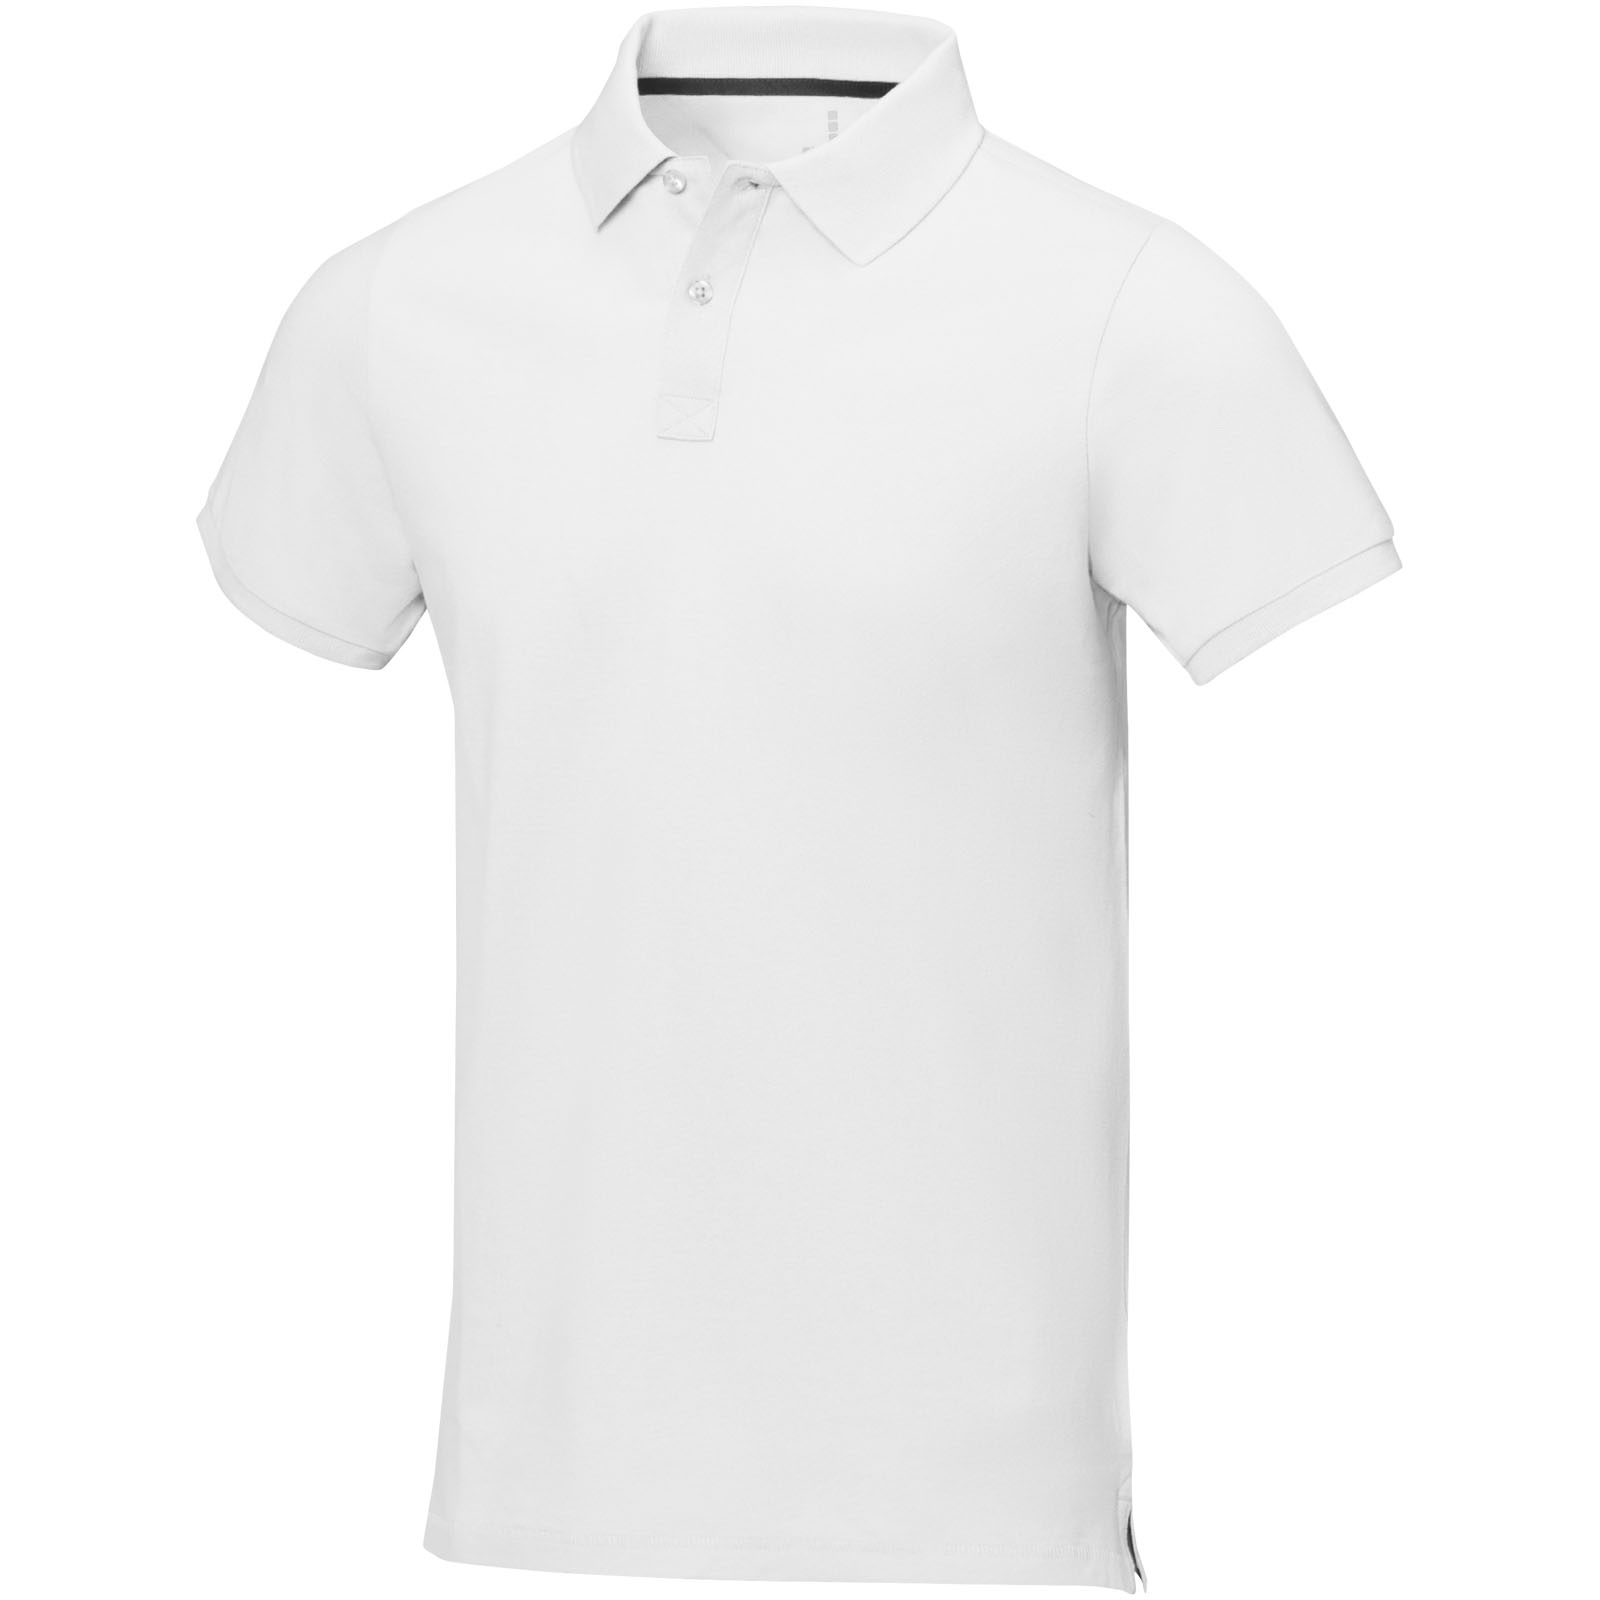 Clothing - Calgary short sleeve men's polo